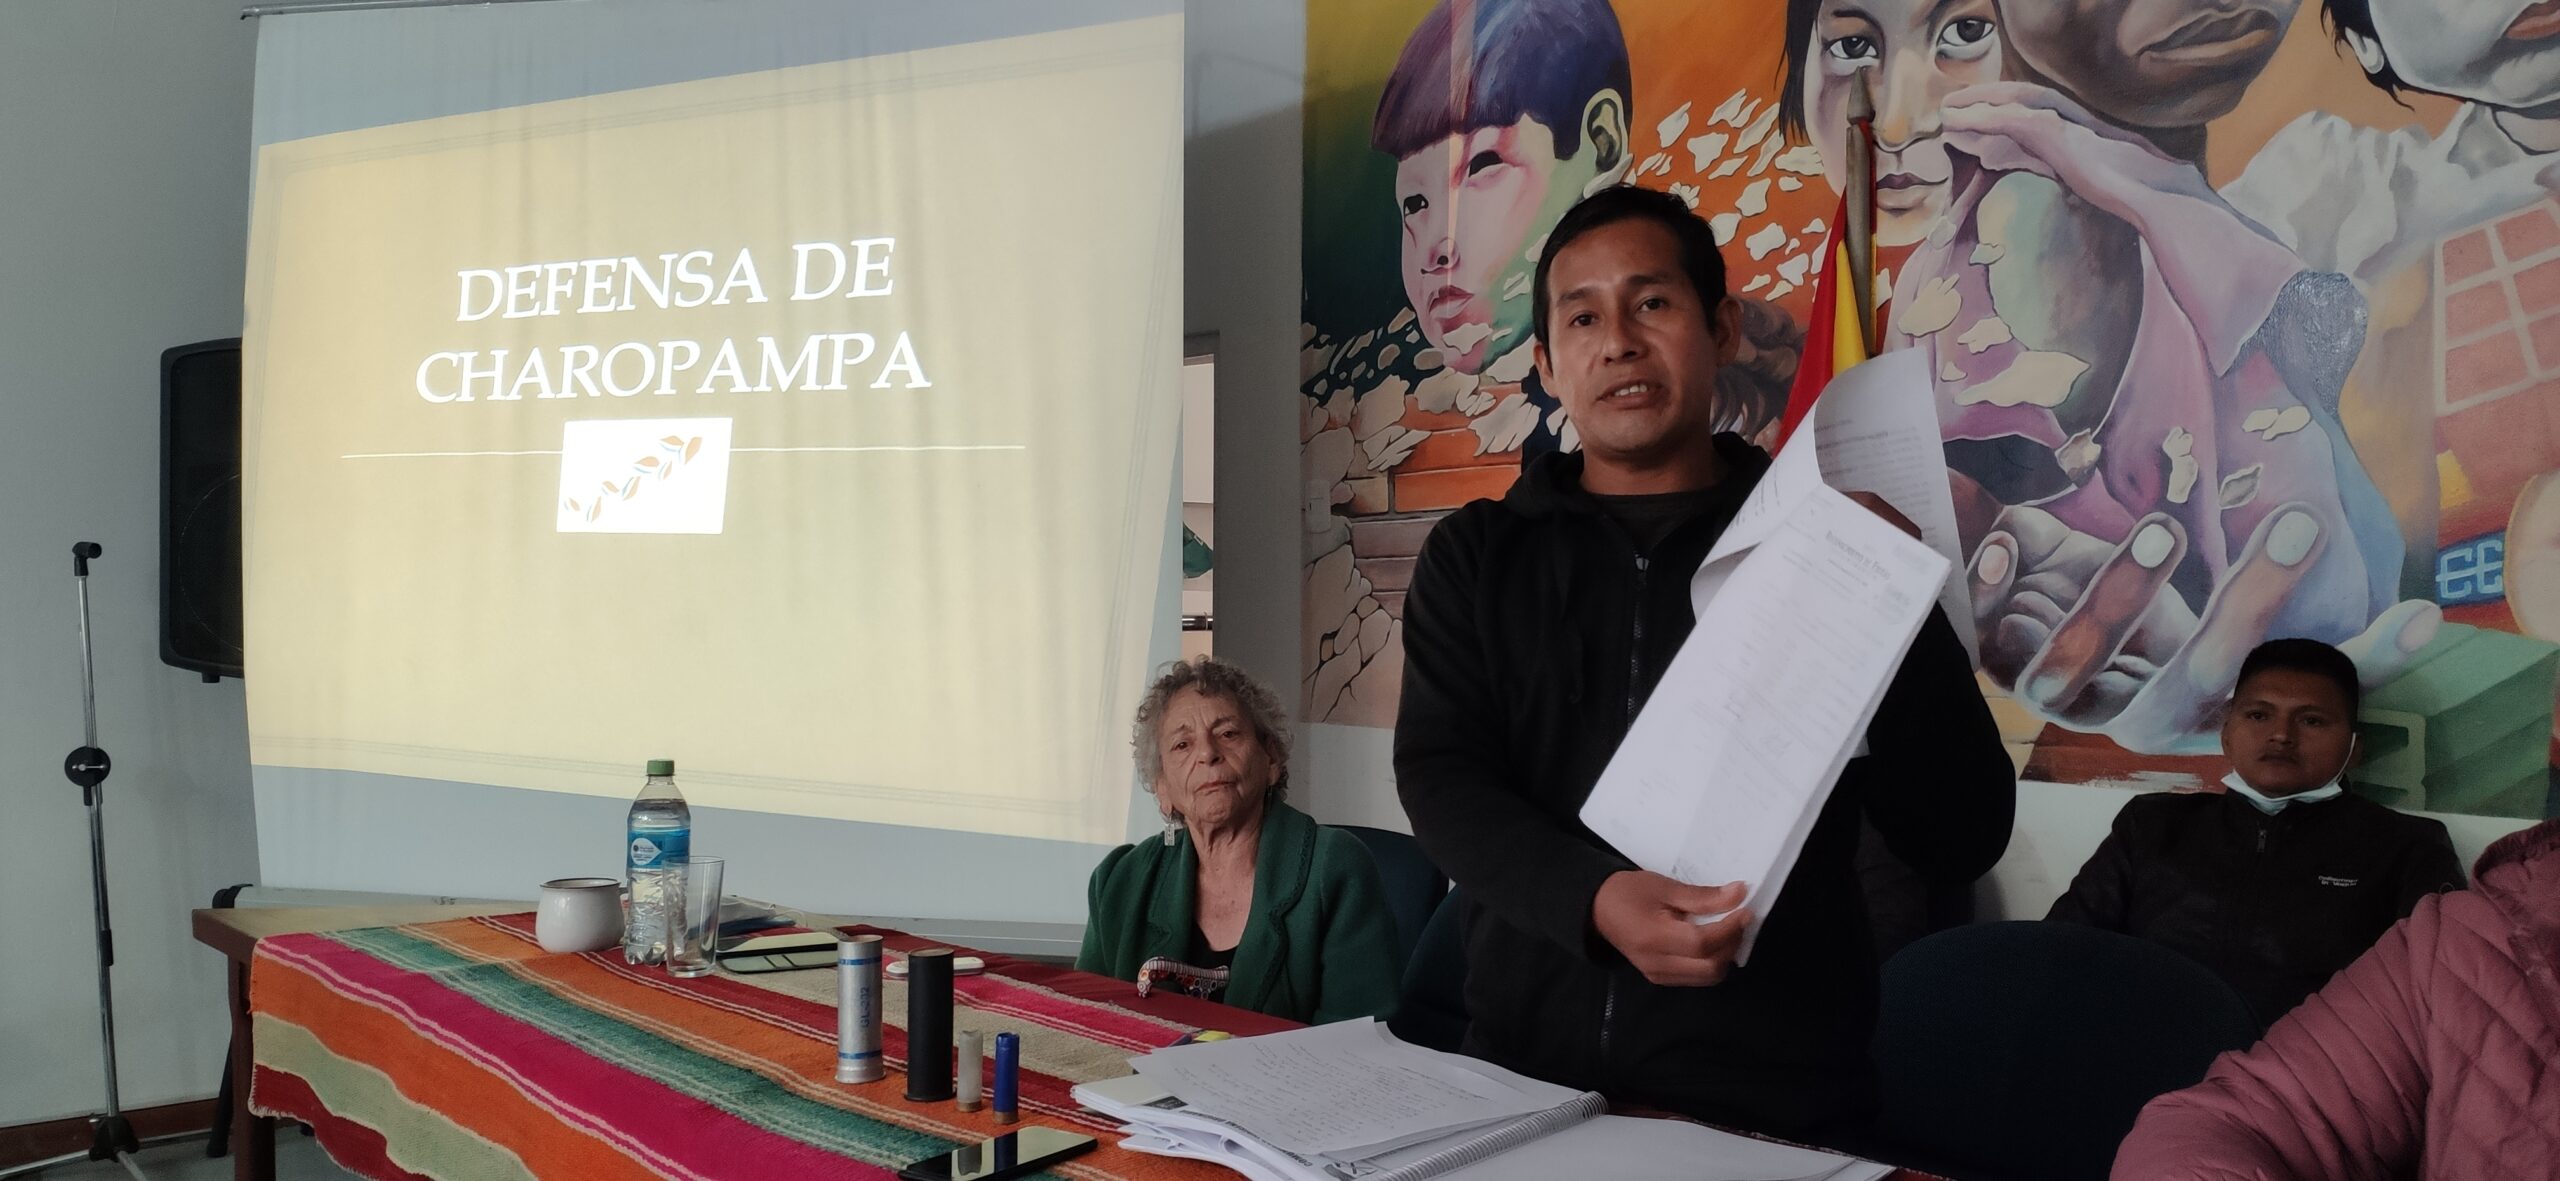 Comunarios de Charopampa presentan acción popular para demandar consulta previa por explotación minera